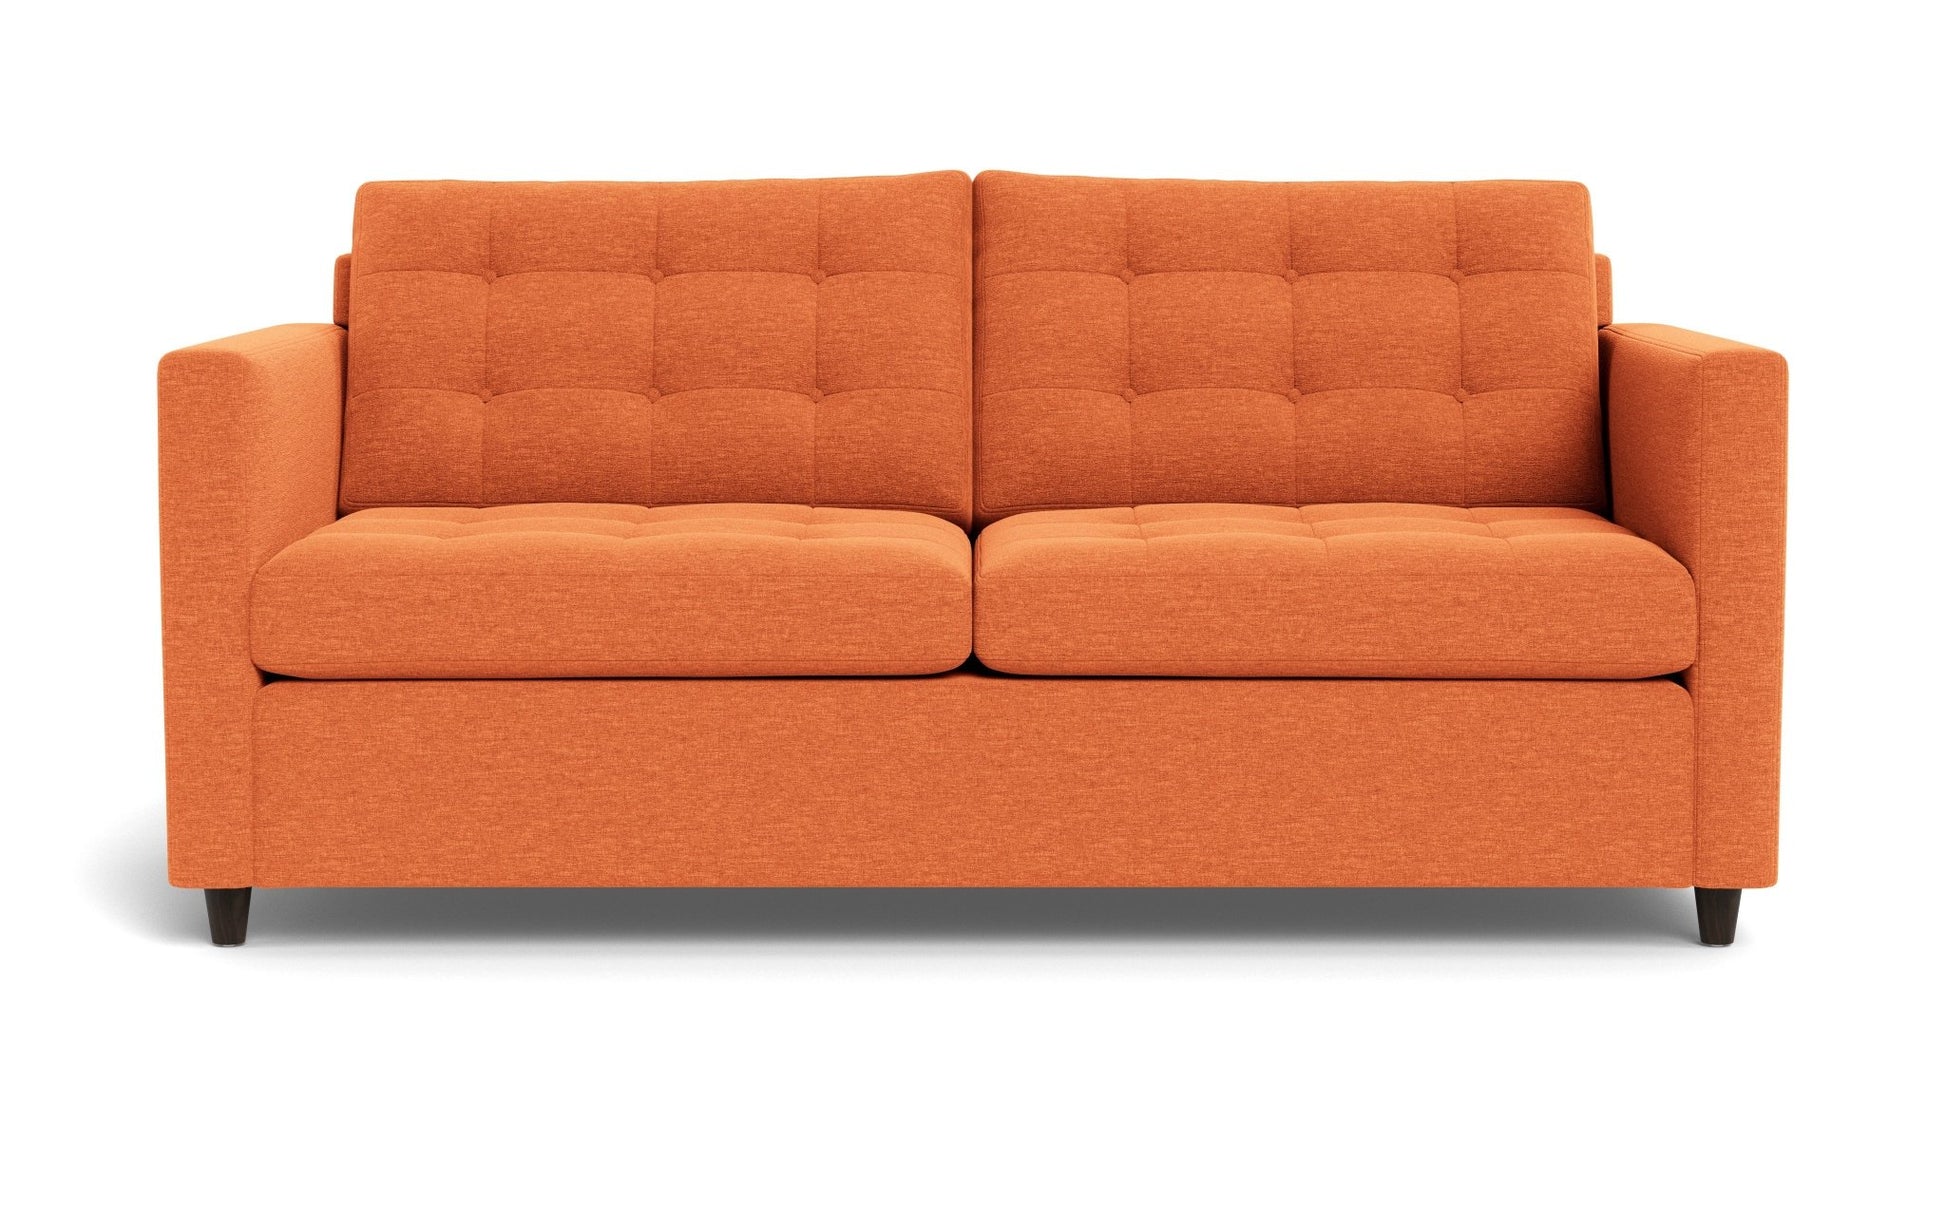 Wallace Queen Sleeper Sofa - Bennett Orangeade